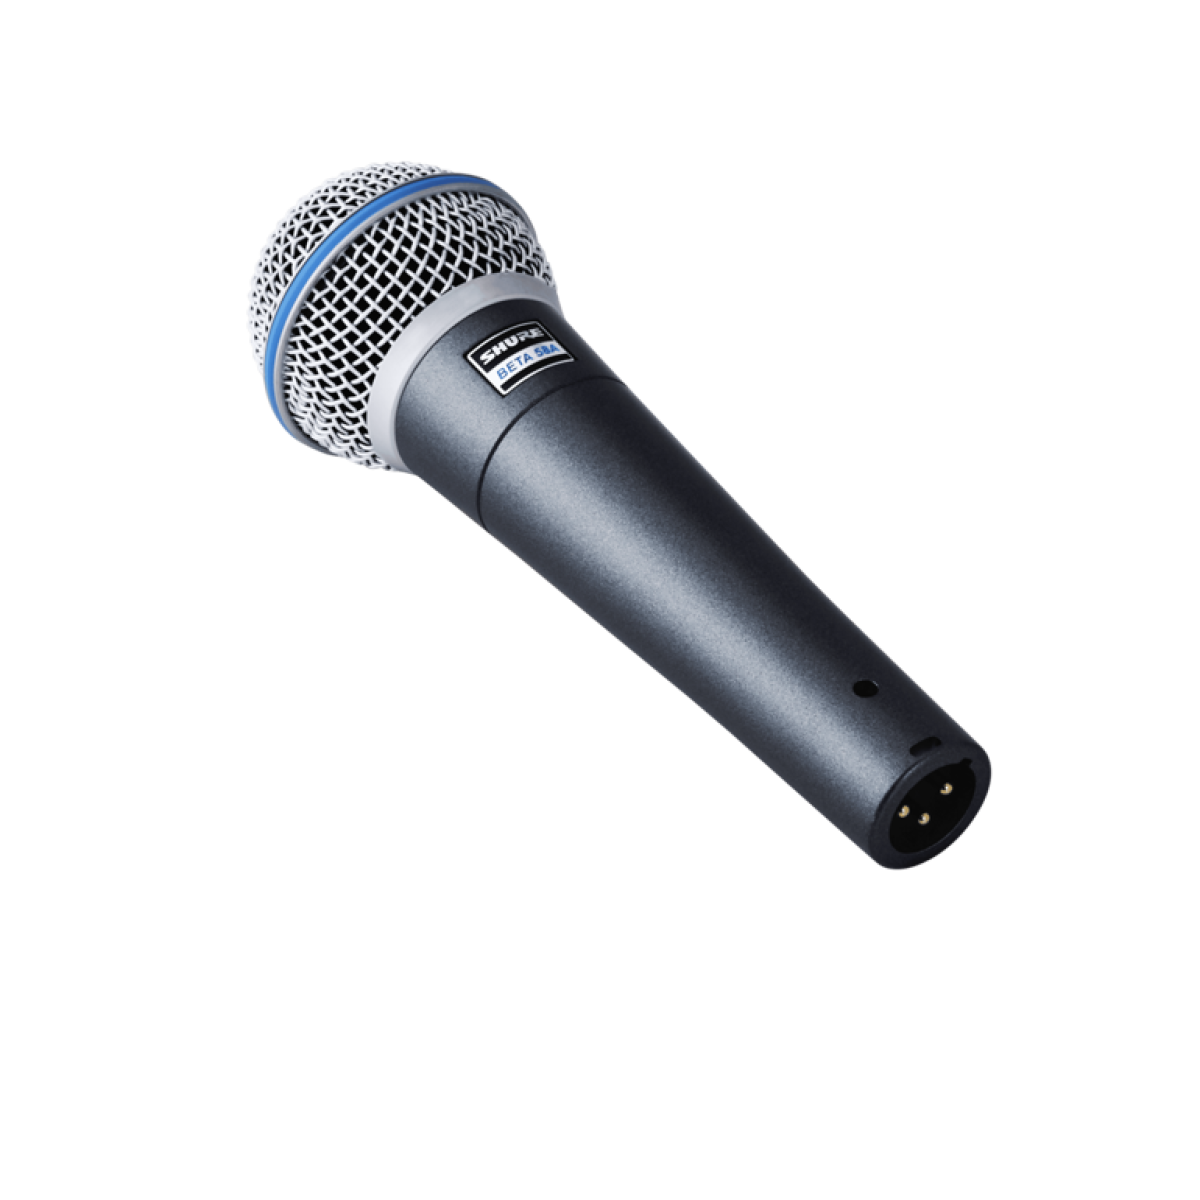 Shure микрофоны для вокала. Микрофон Шур 58 бета. Микрофоны Shure Beta 58a. Shure микрофон Shure Beta 58a. Динамический суперкардиоидный вокальный микрофон Shure Beta 58a.